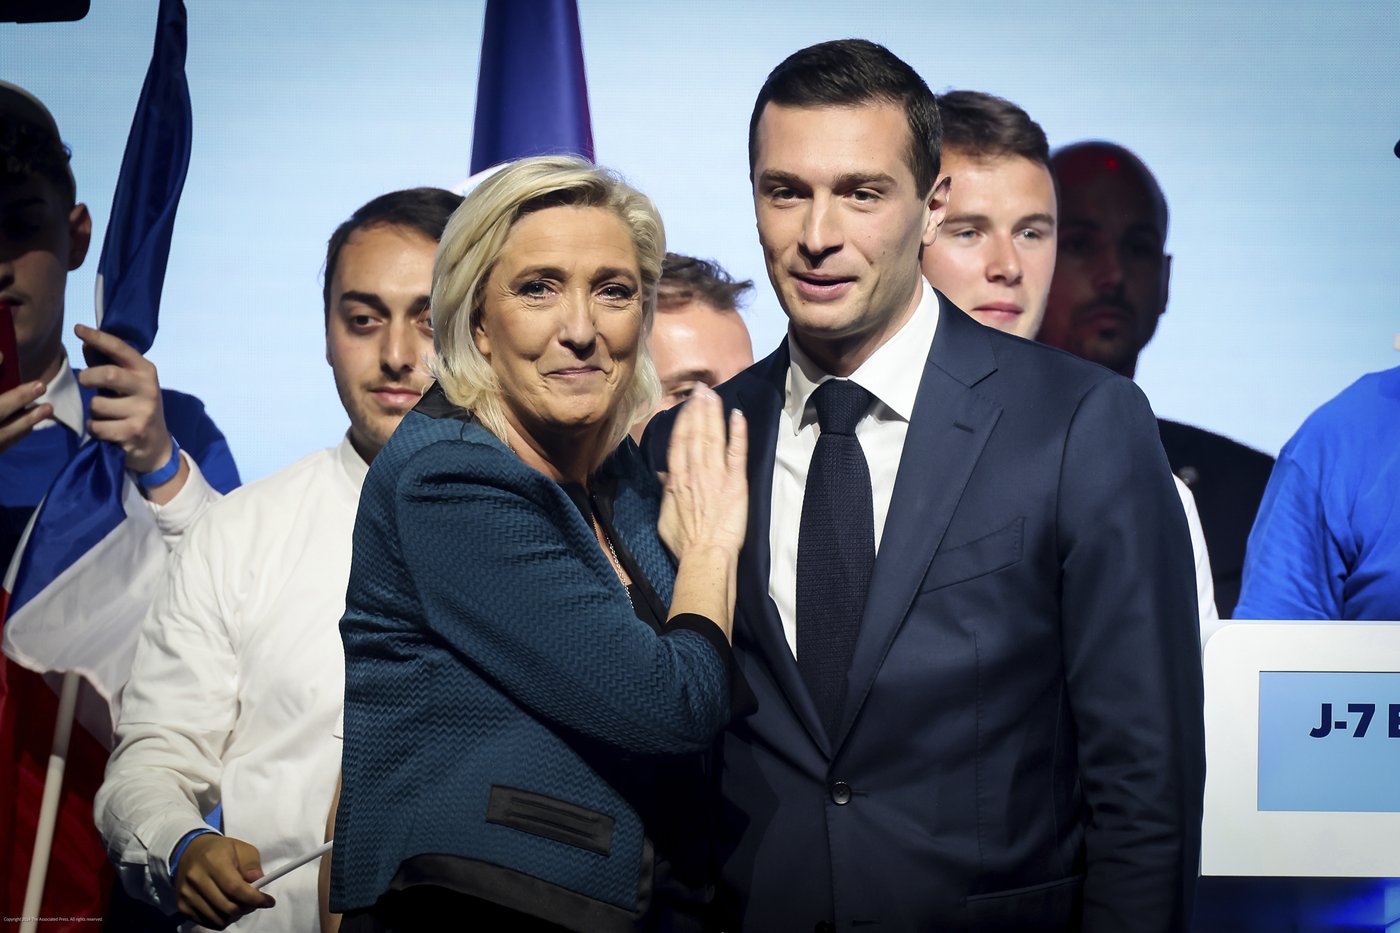 Élections européennes: l’extrême droite a le vent dans les voiles en France